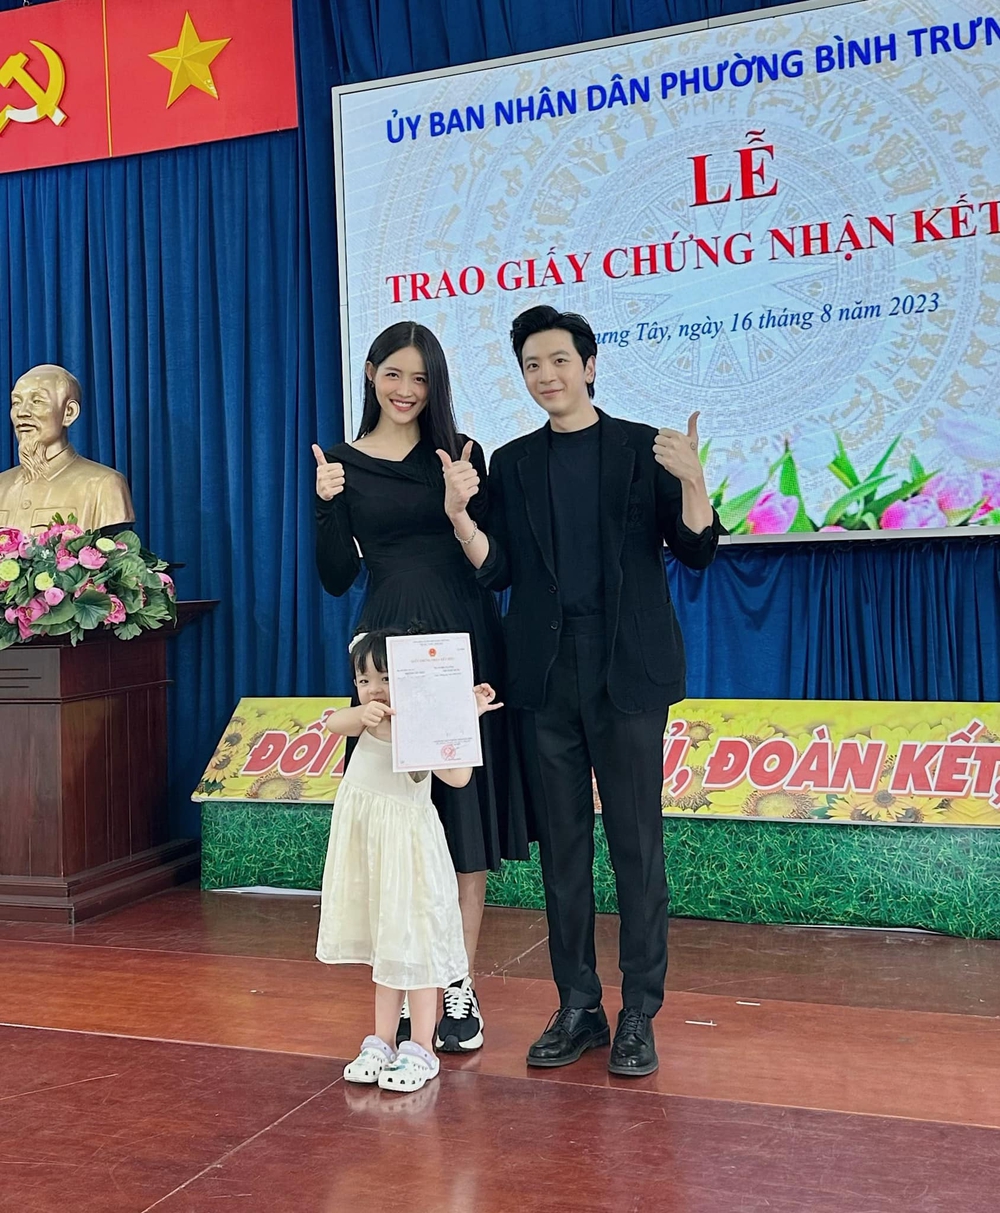 Trương Mỹ Nhân và Phí Ngọc Hưng nhận giấy đăng ký kết hôn, chính thức nên duyên vợ chồng - Ảnh 1.